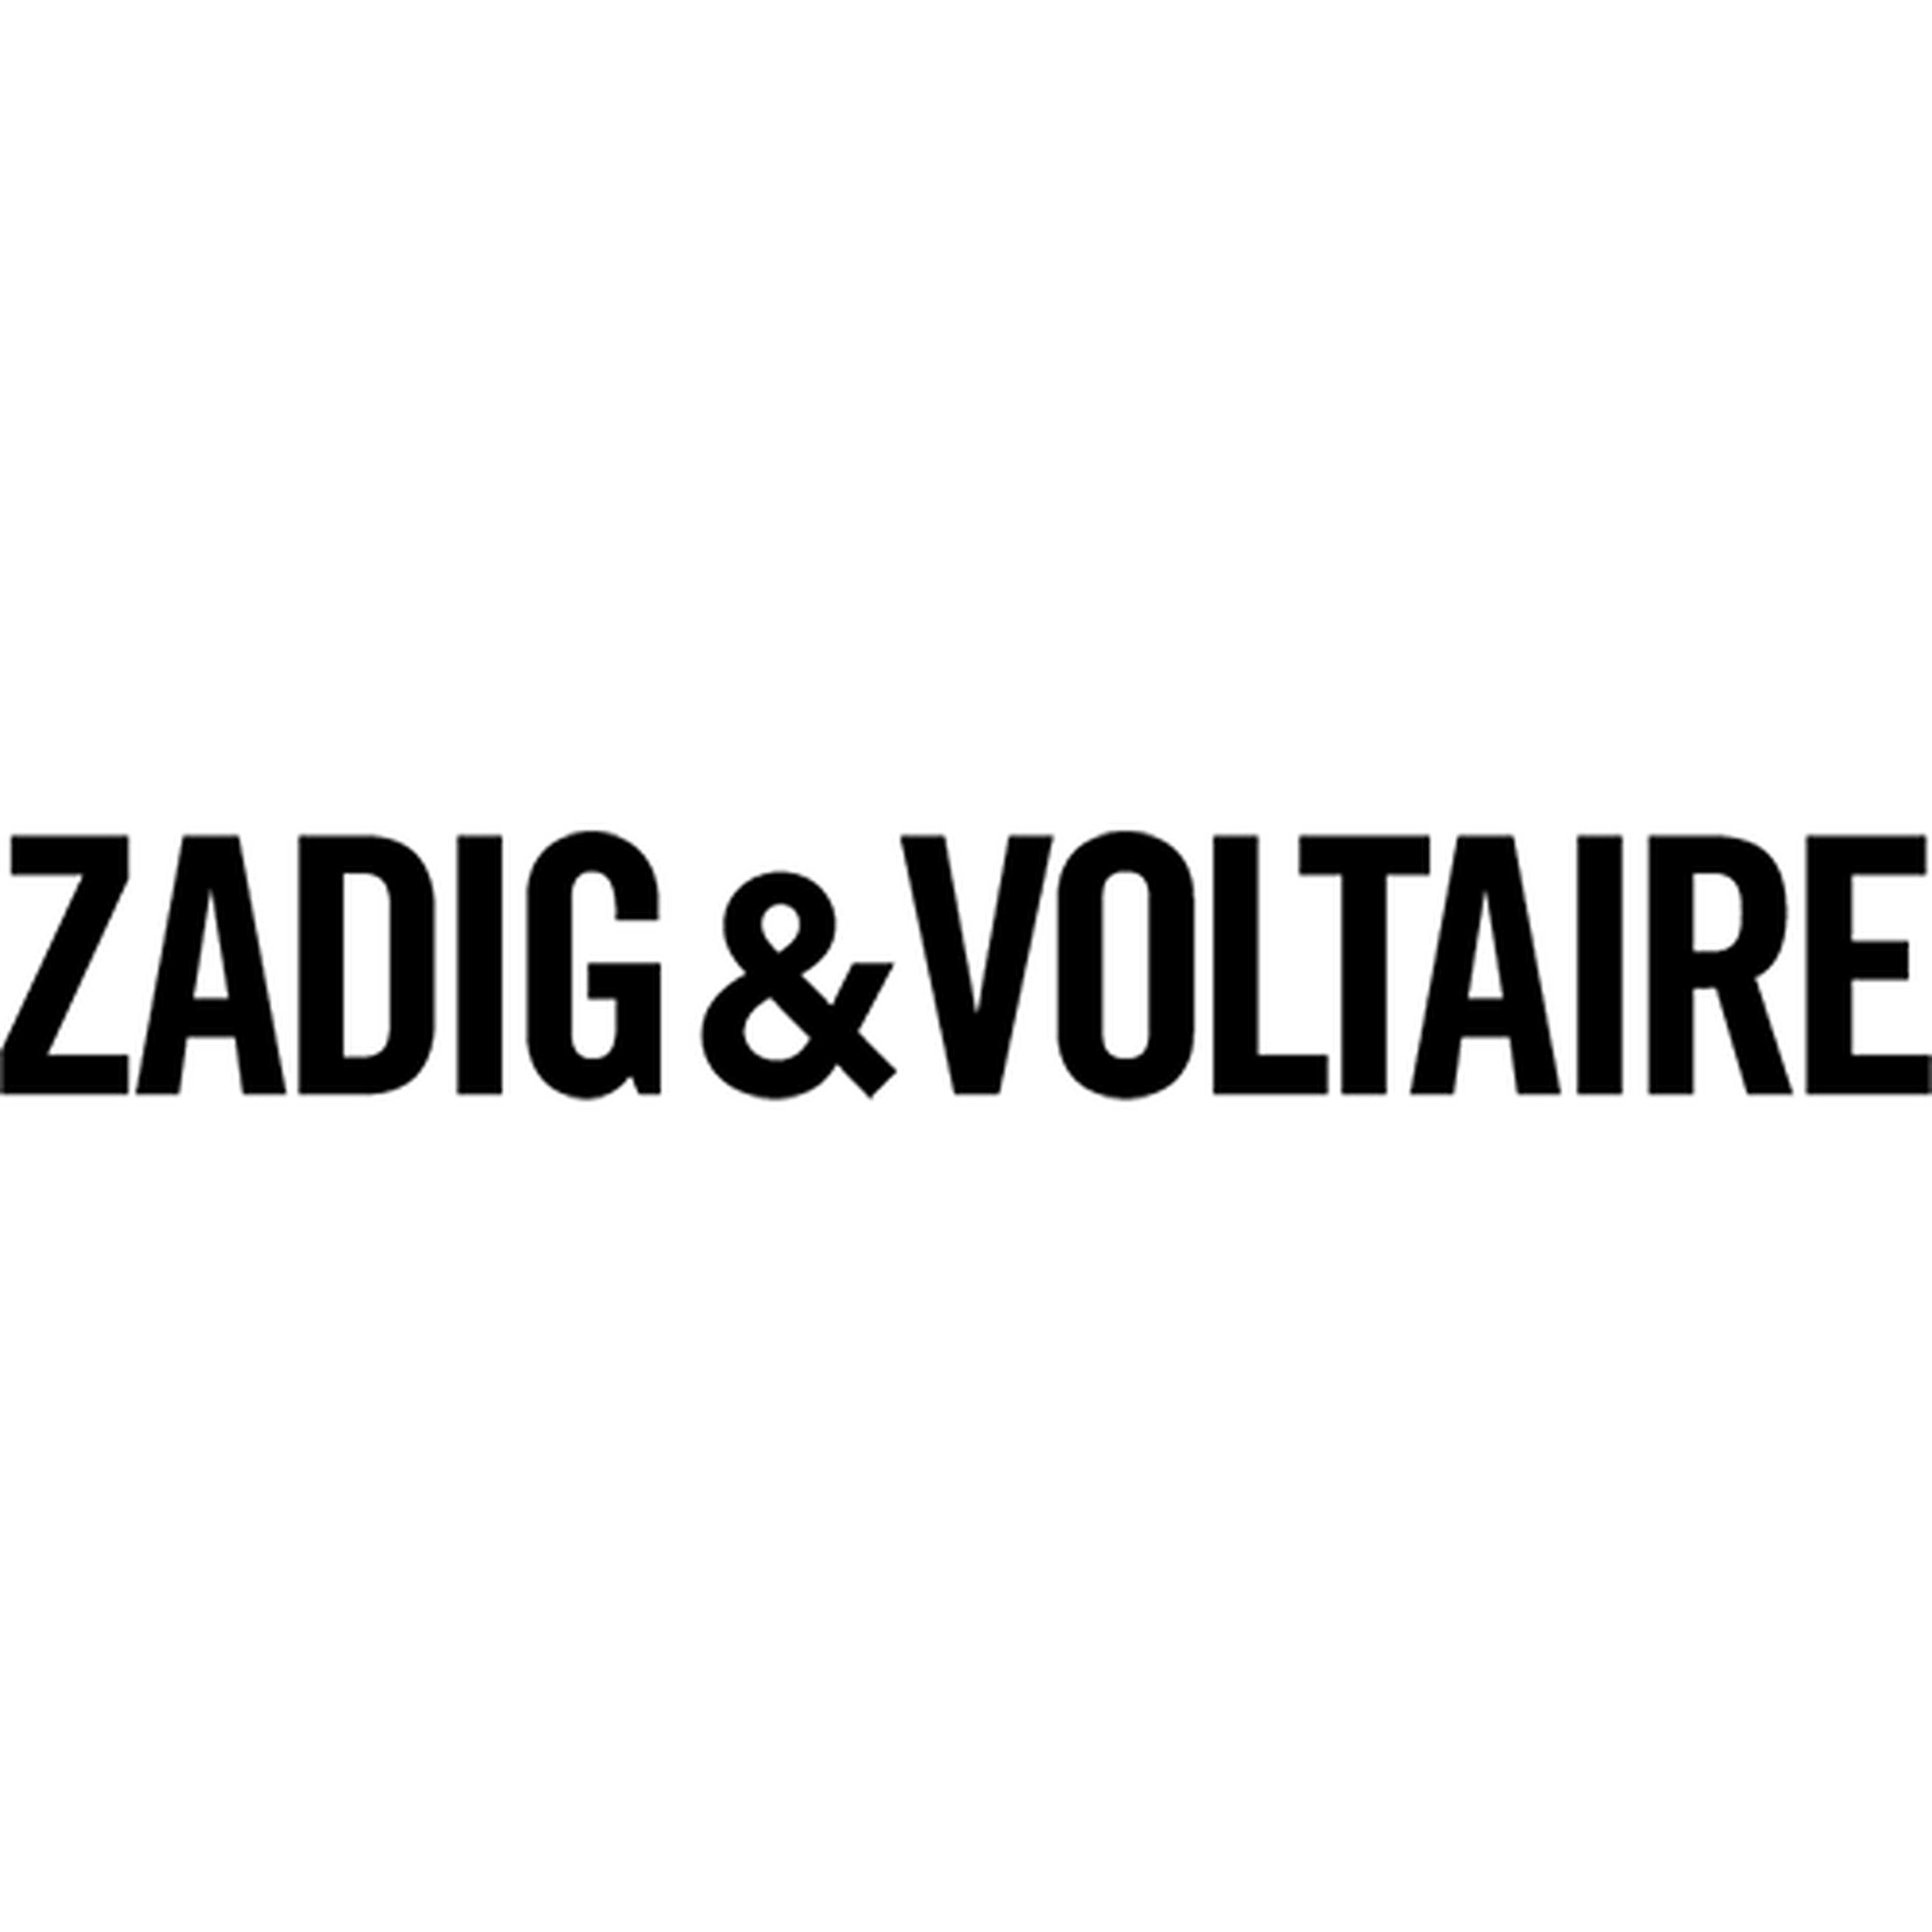 Zadig & Voltaire logotype